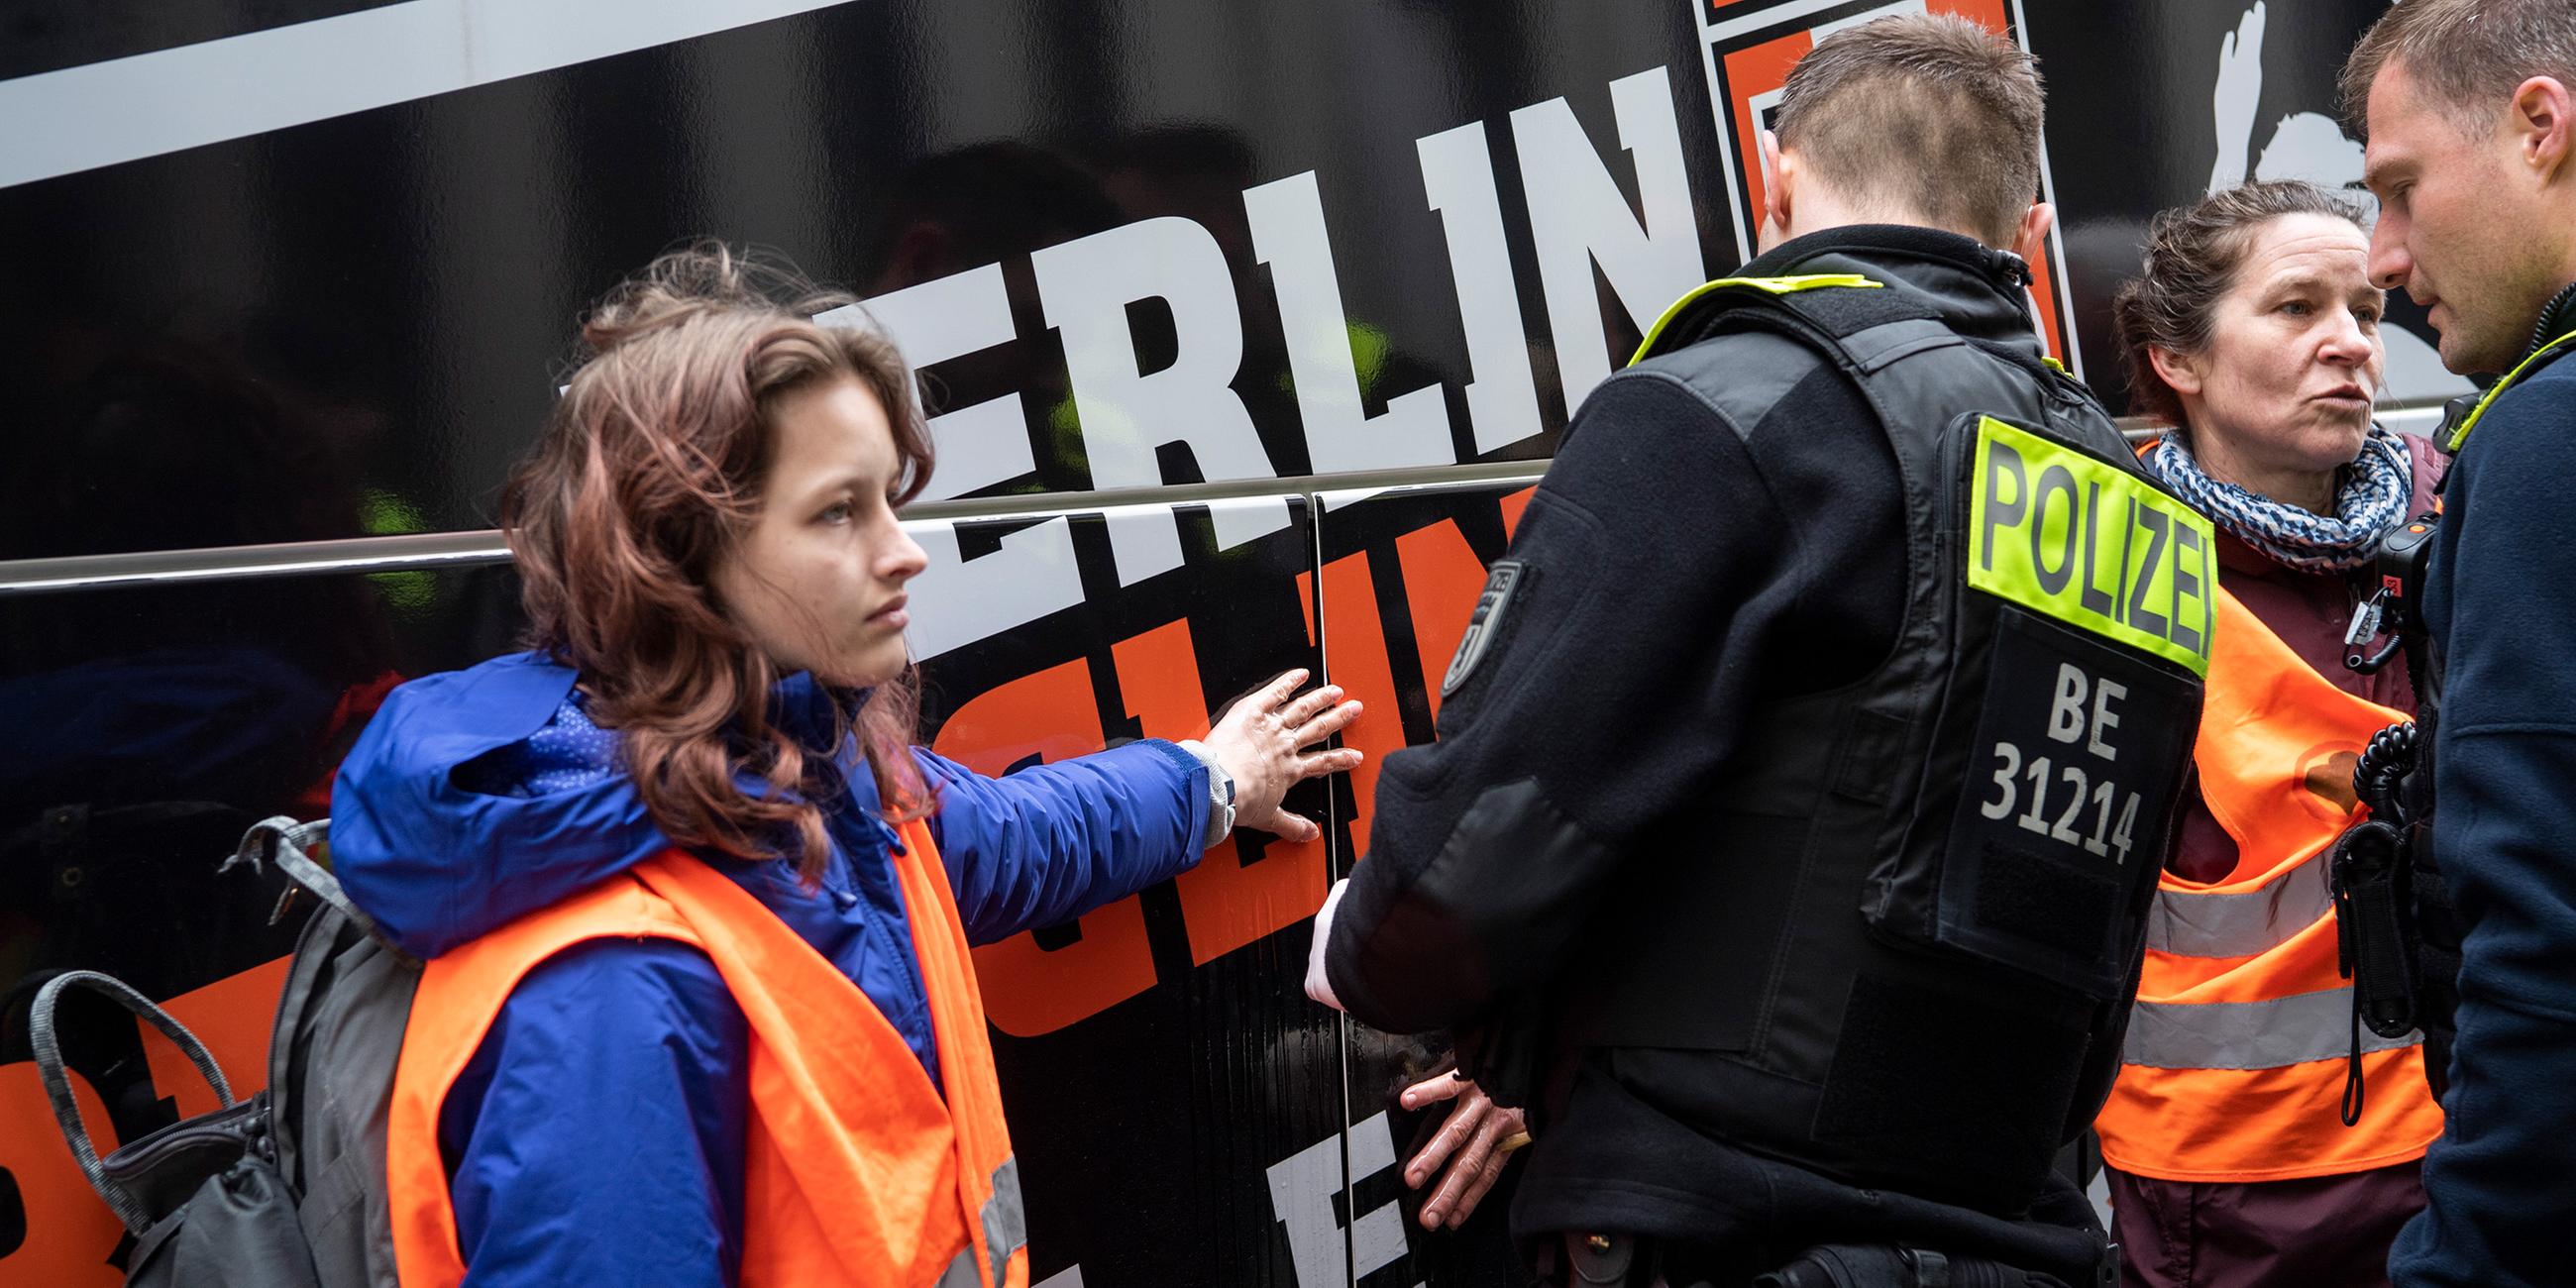 Klimaaktivisten haben sich an einem Reisebus vor dem Marriott Hotel am Potsdamer Platz geklebt